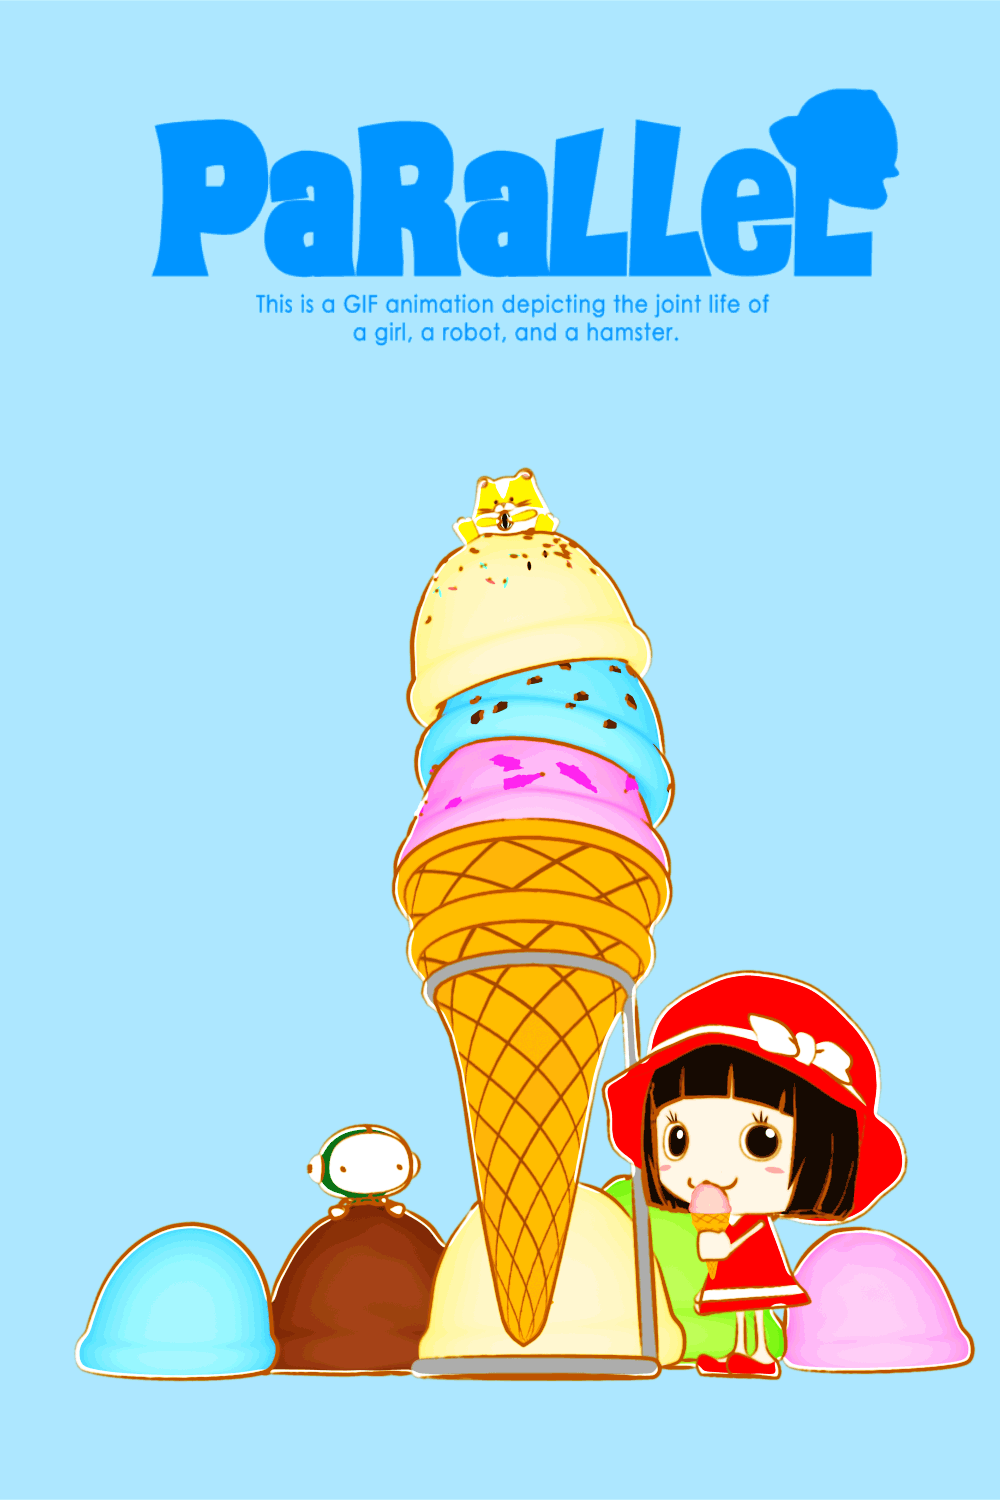 アイスクリームを食べてるキャラクターのイラスト